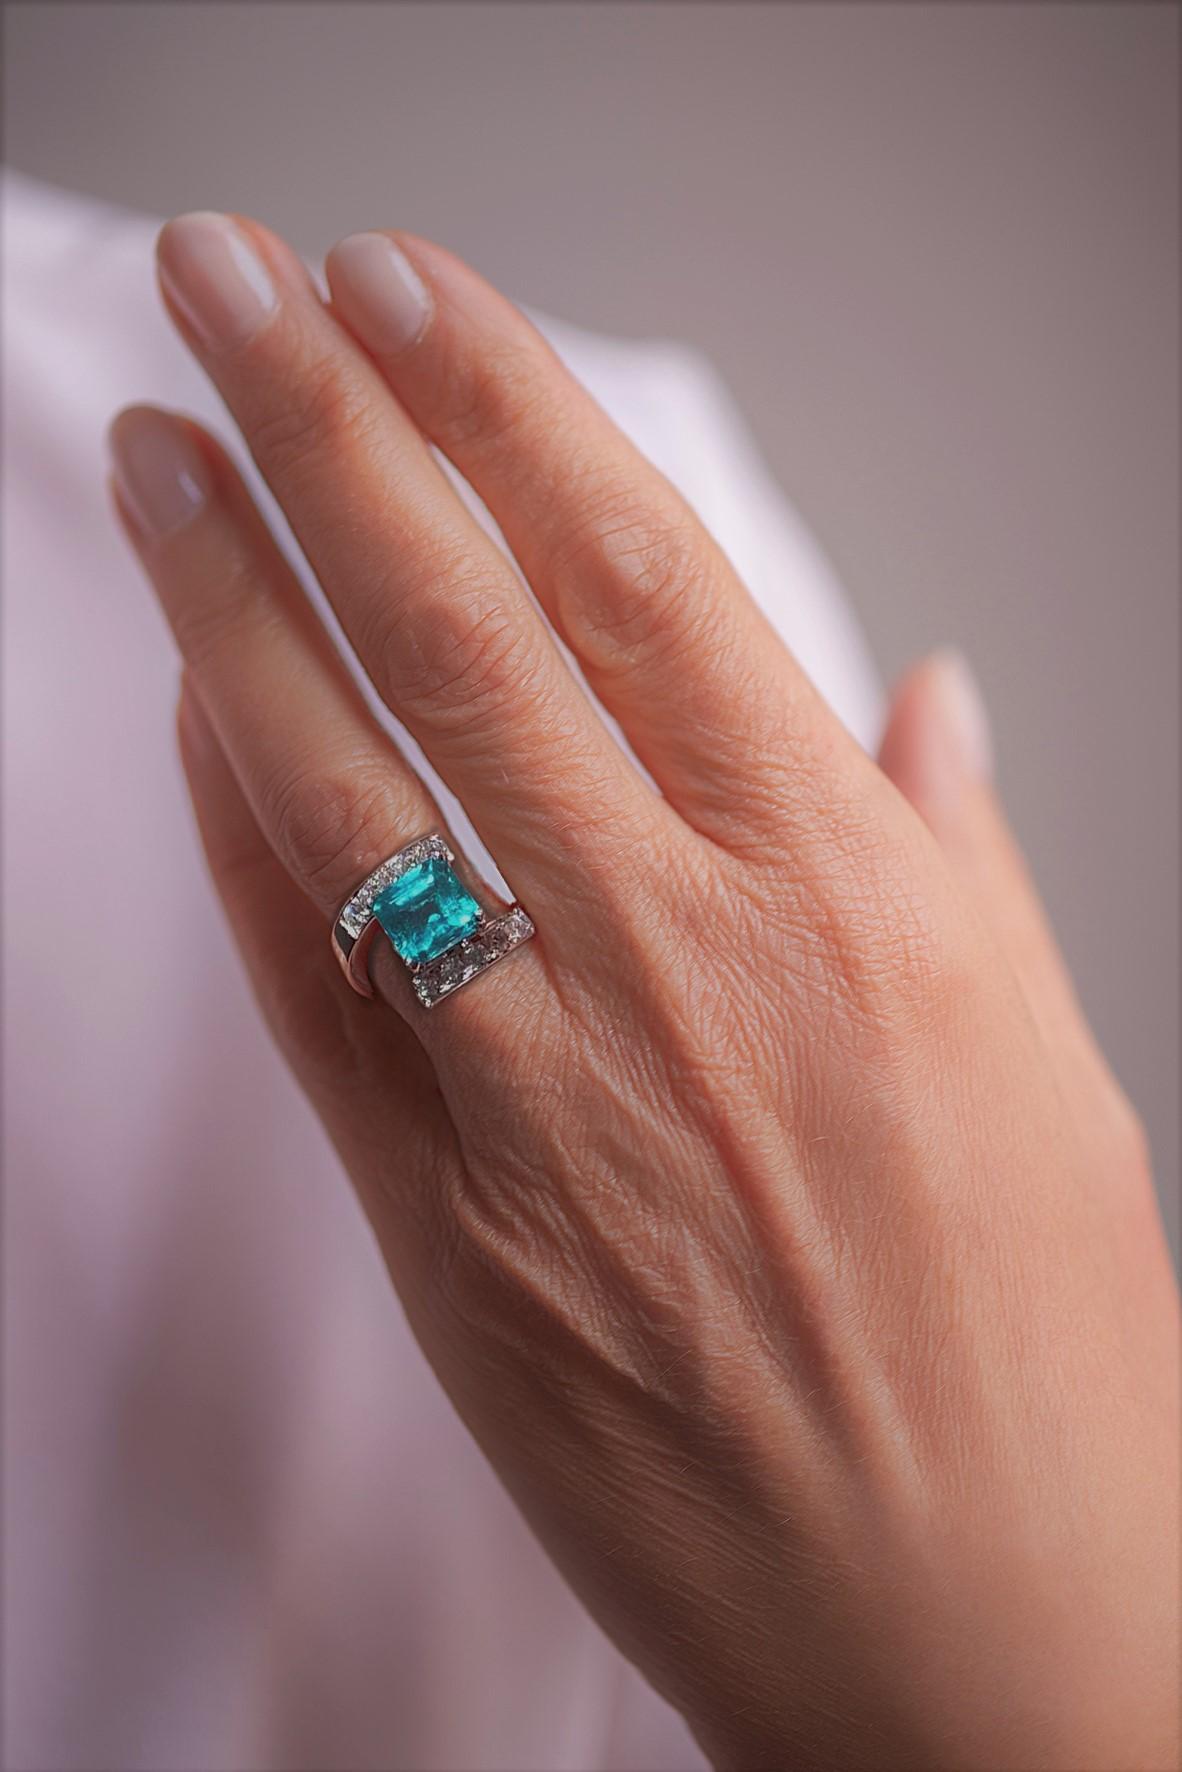 IGN zertifiziert 2,10 Karat Smaragd 18 Karat 0,56 Karat weiße Diamanten Platin Ring.
Ein zeitloser Design-Ring, handgefertigt aus Platin von erfahrenen Handwerkern und verziert mit einem grünen Smaragd und weißen Diamanten. Ein Ring, der jedes